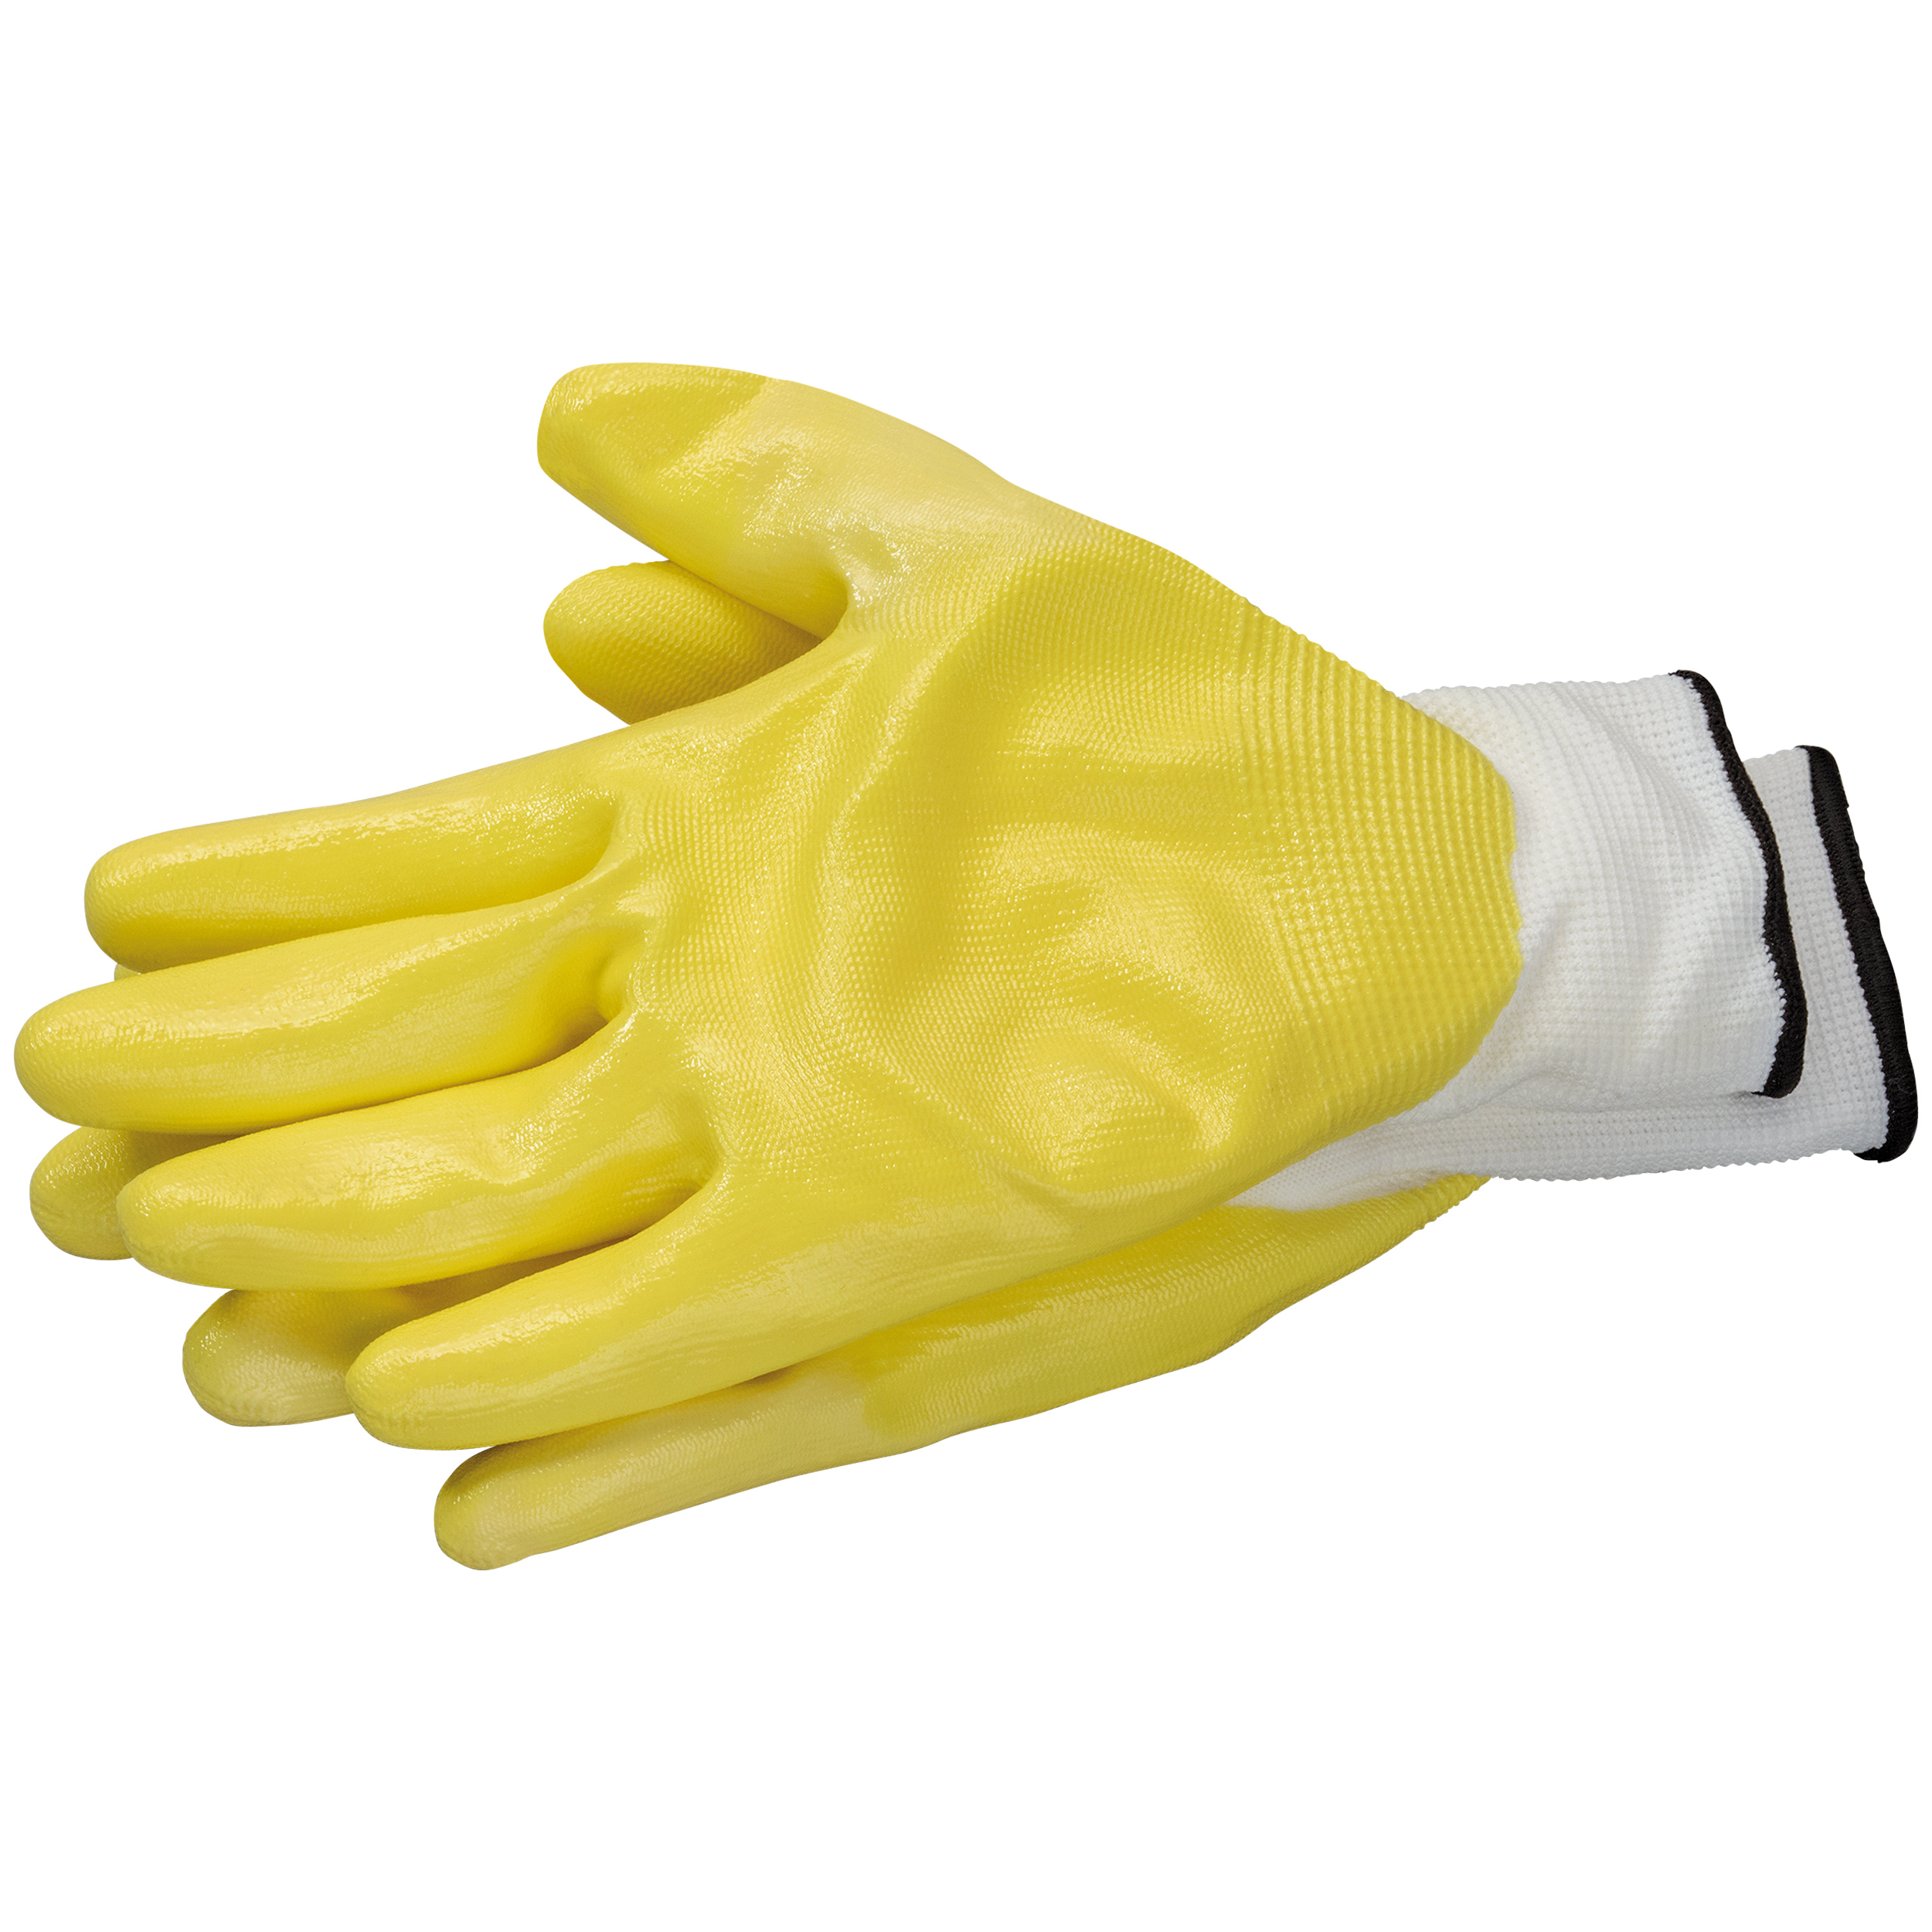 Handschuhe PaintGrip Nitril gelb EN388 Größe 8 (M)